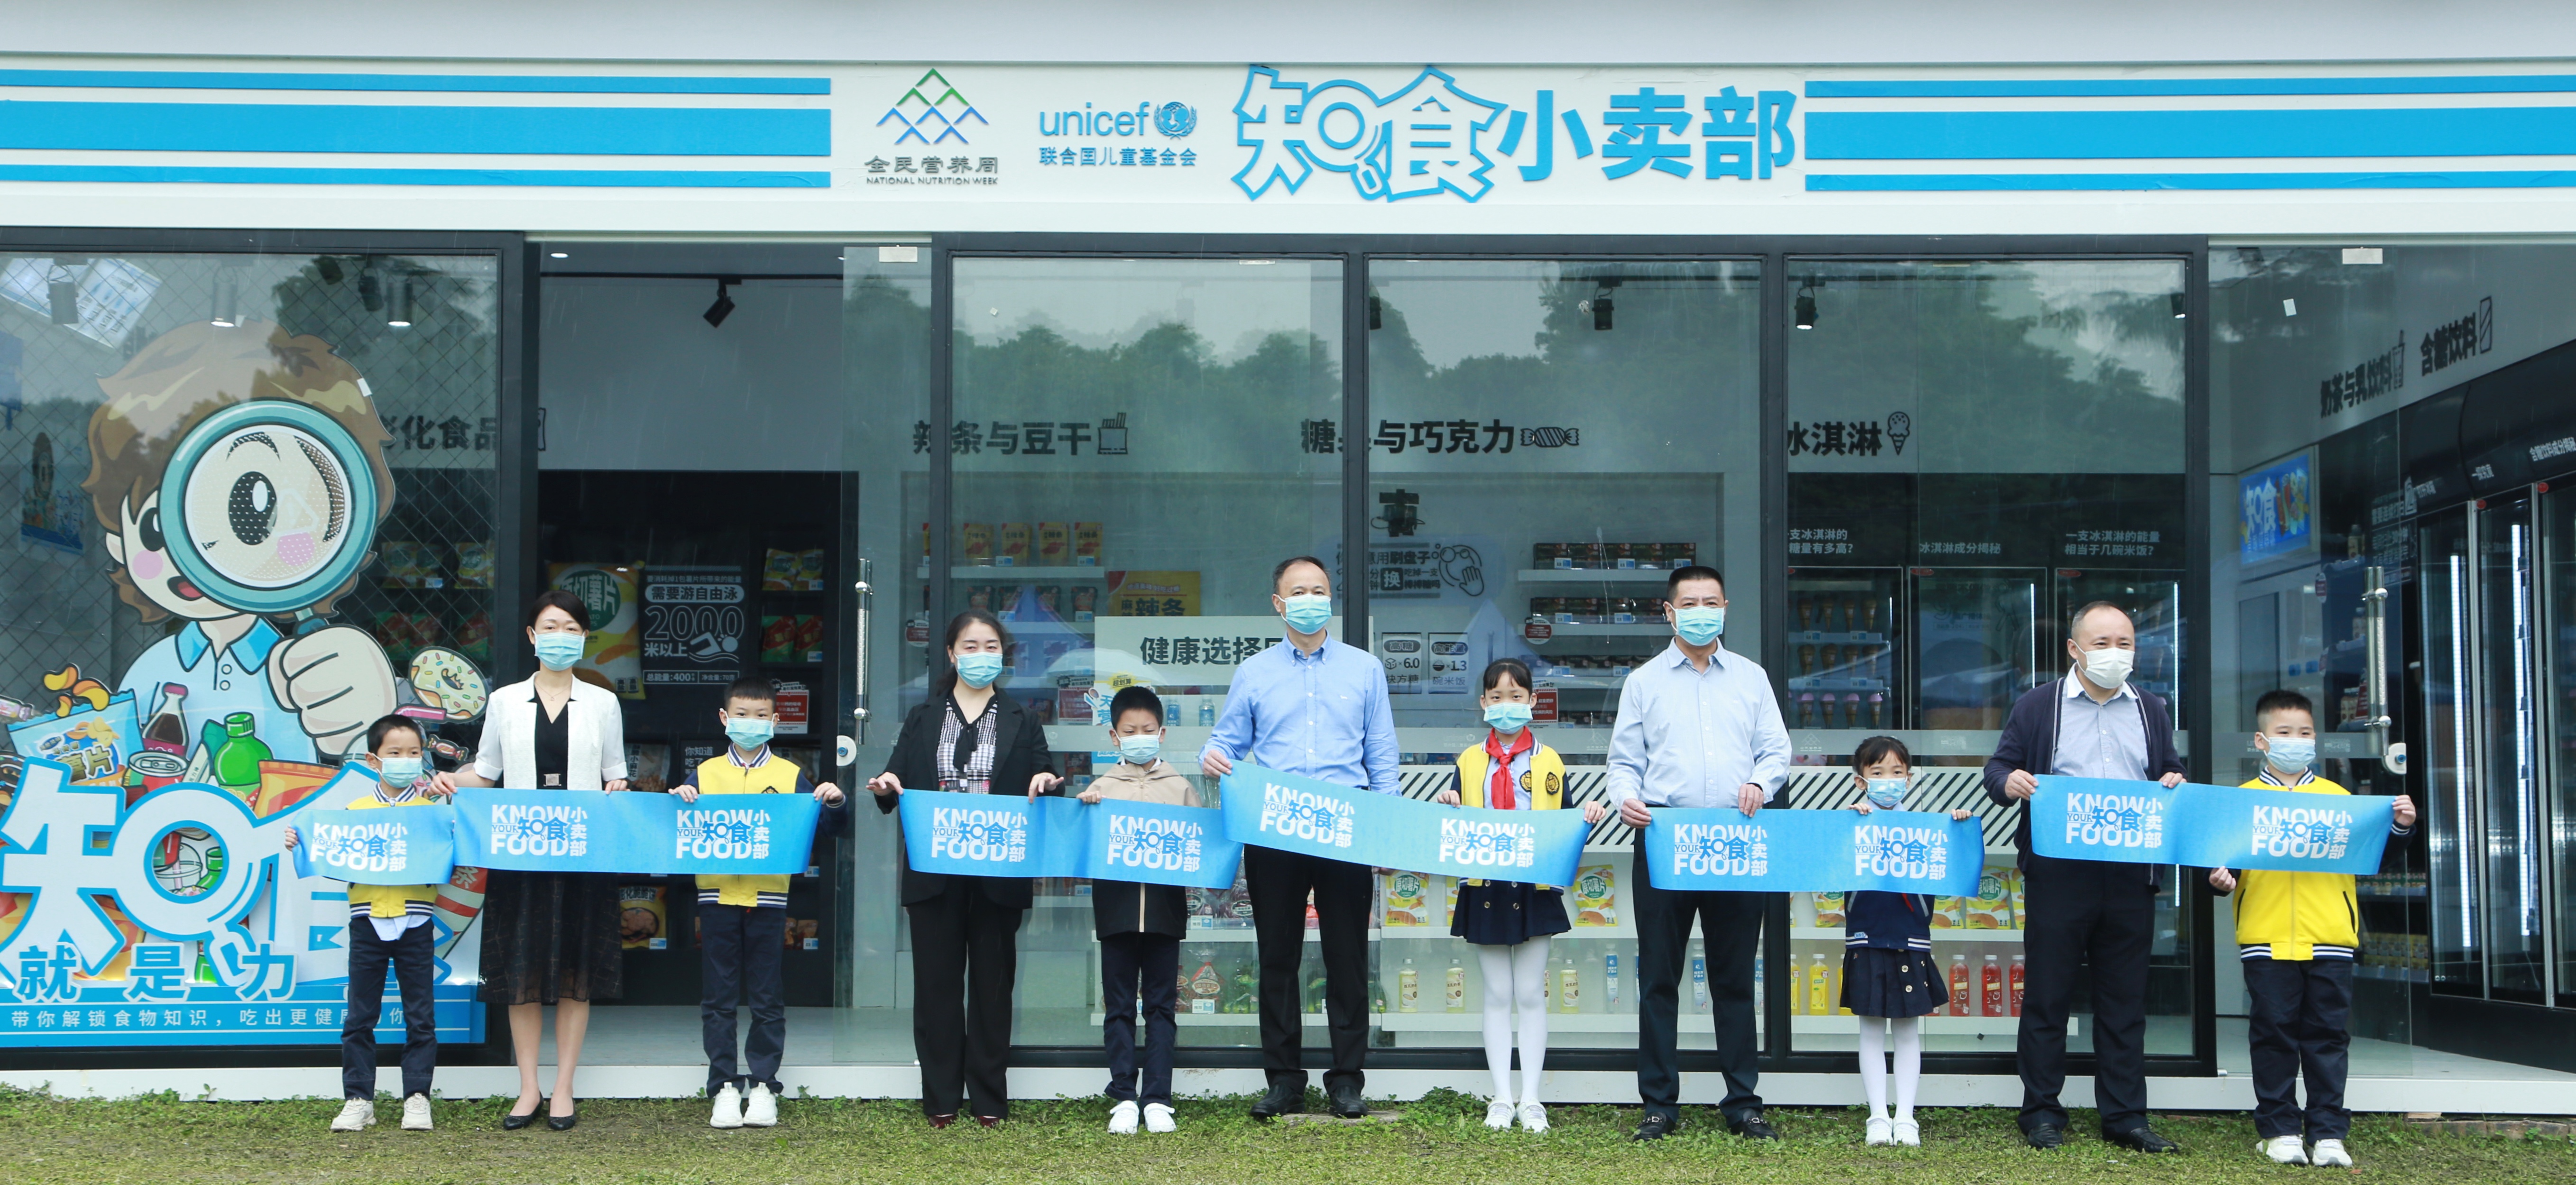 2022年5月17日，在四川省成都市青少年宫（九里堤活动中心），儿童和成都市多个政府部门的代表一起为联合国儿童基金会的知食小卖部展览剪彩。